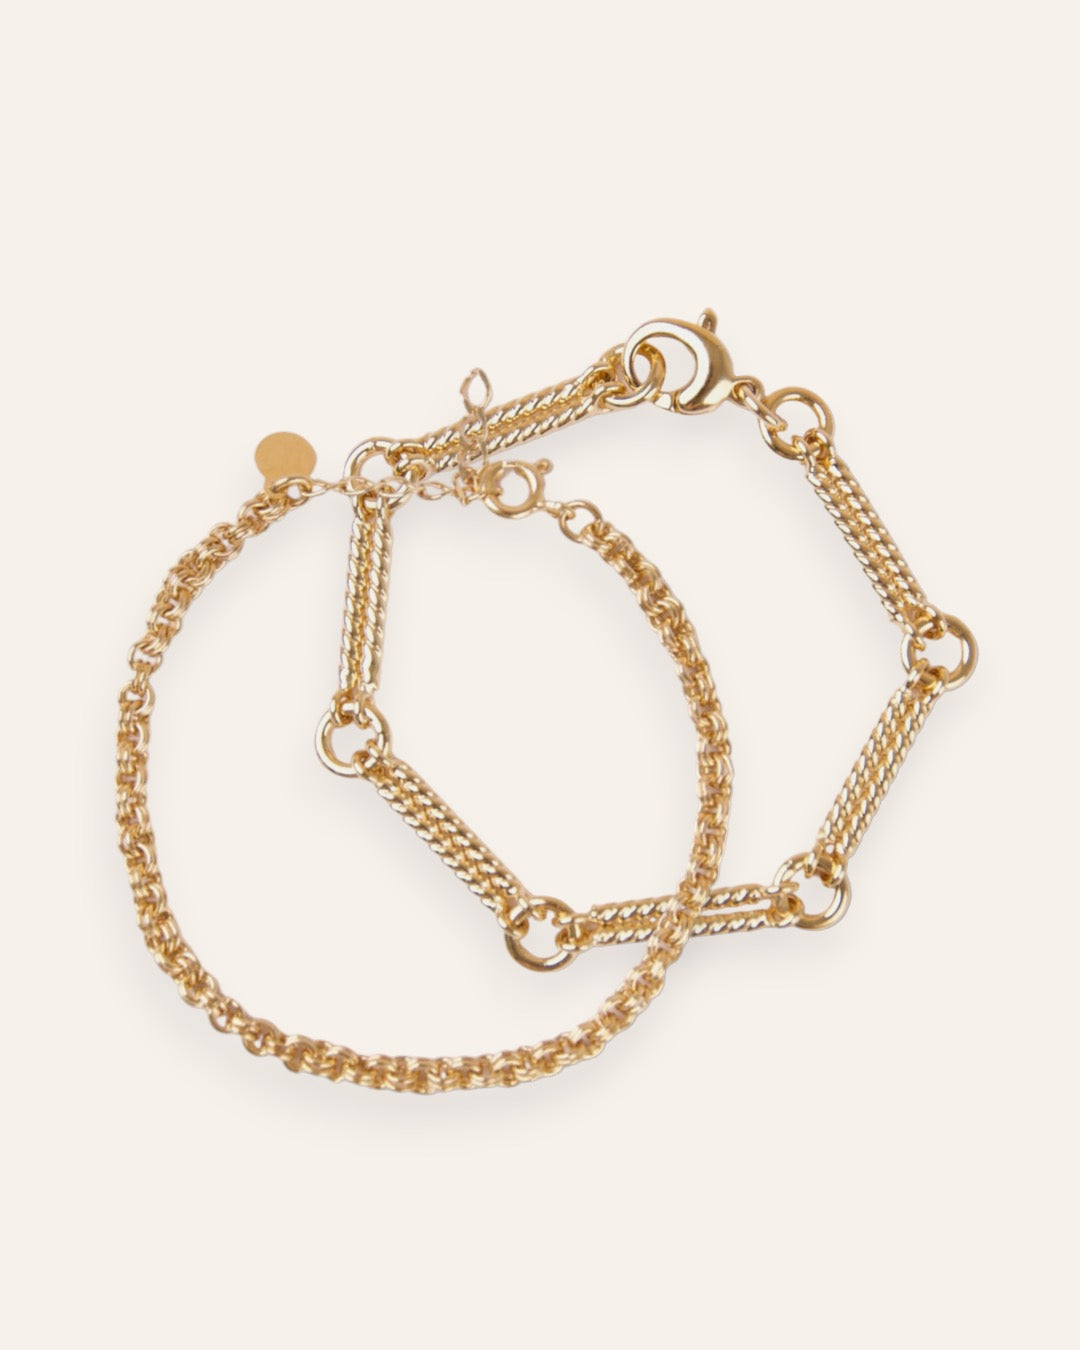 Composition de deux bracelets, avec un bracelet en chaîne tige torsadée accompagnée de mailles rondes, et  un bracelet en chaîne forçat avec des mailles rondes épaisses en plaqué or 18 carats.